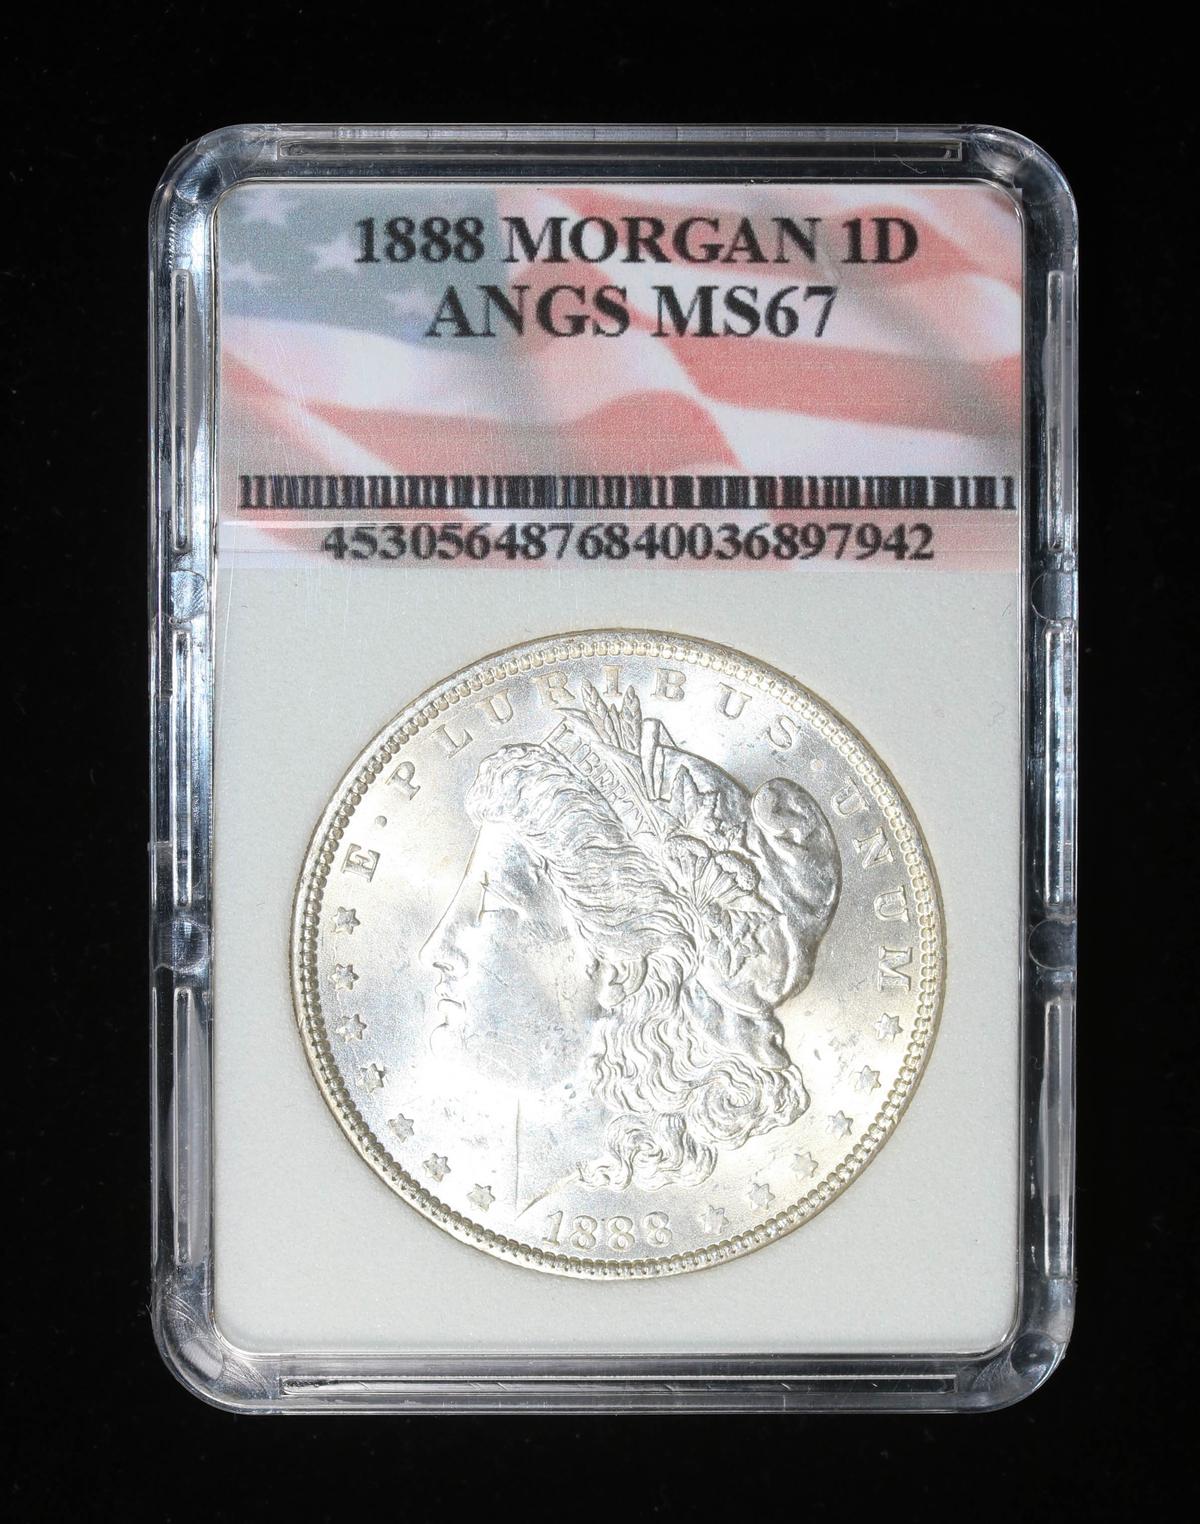 1888 SILVER MORGAN DOLLAR COIN GRADE GEM MS BU UNC MS++++ COIN!!!!